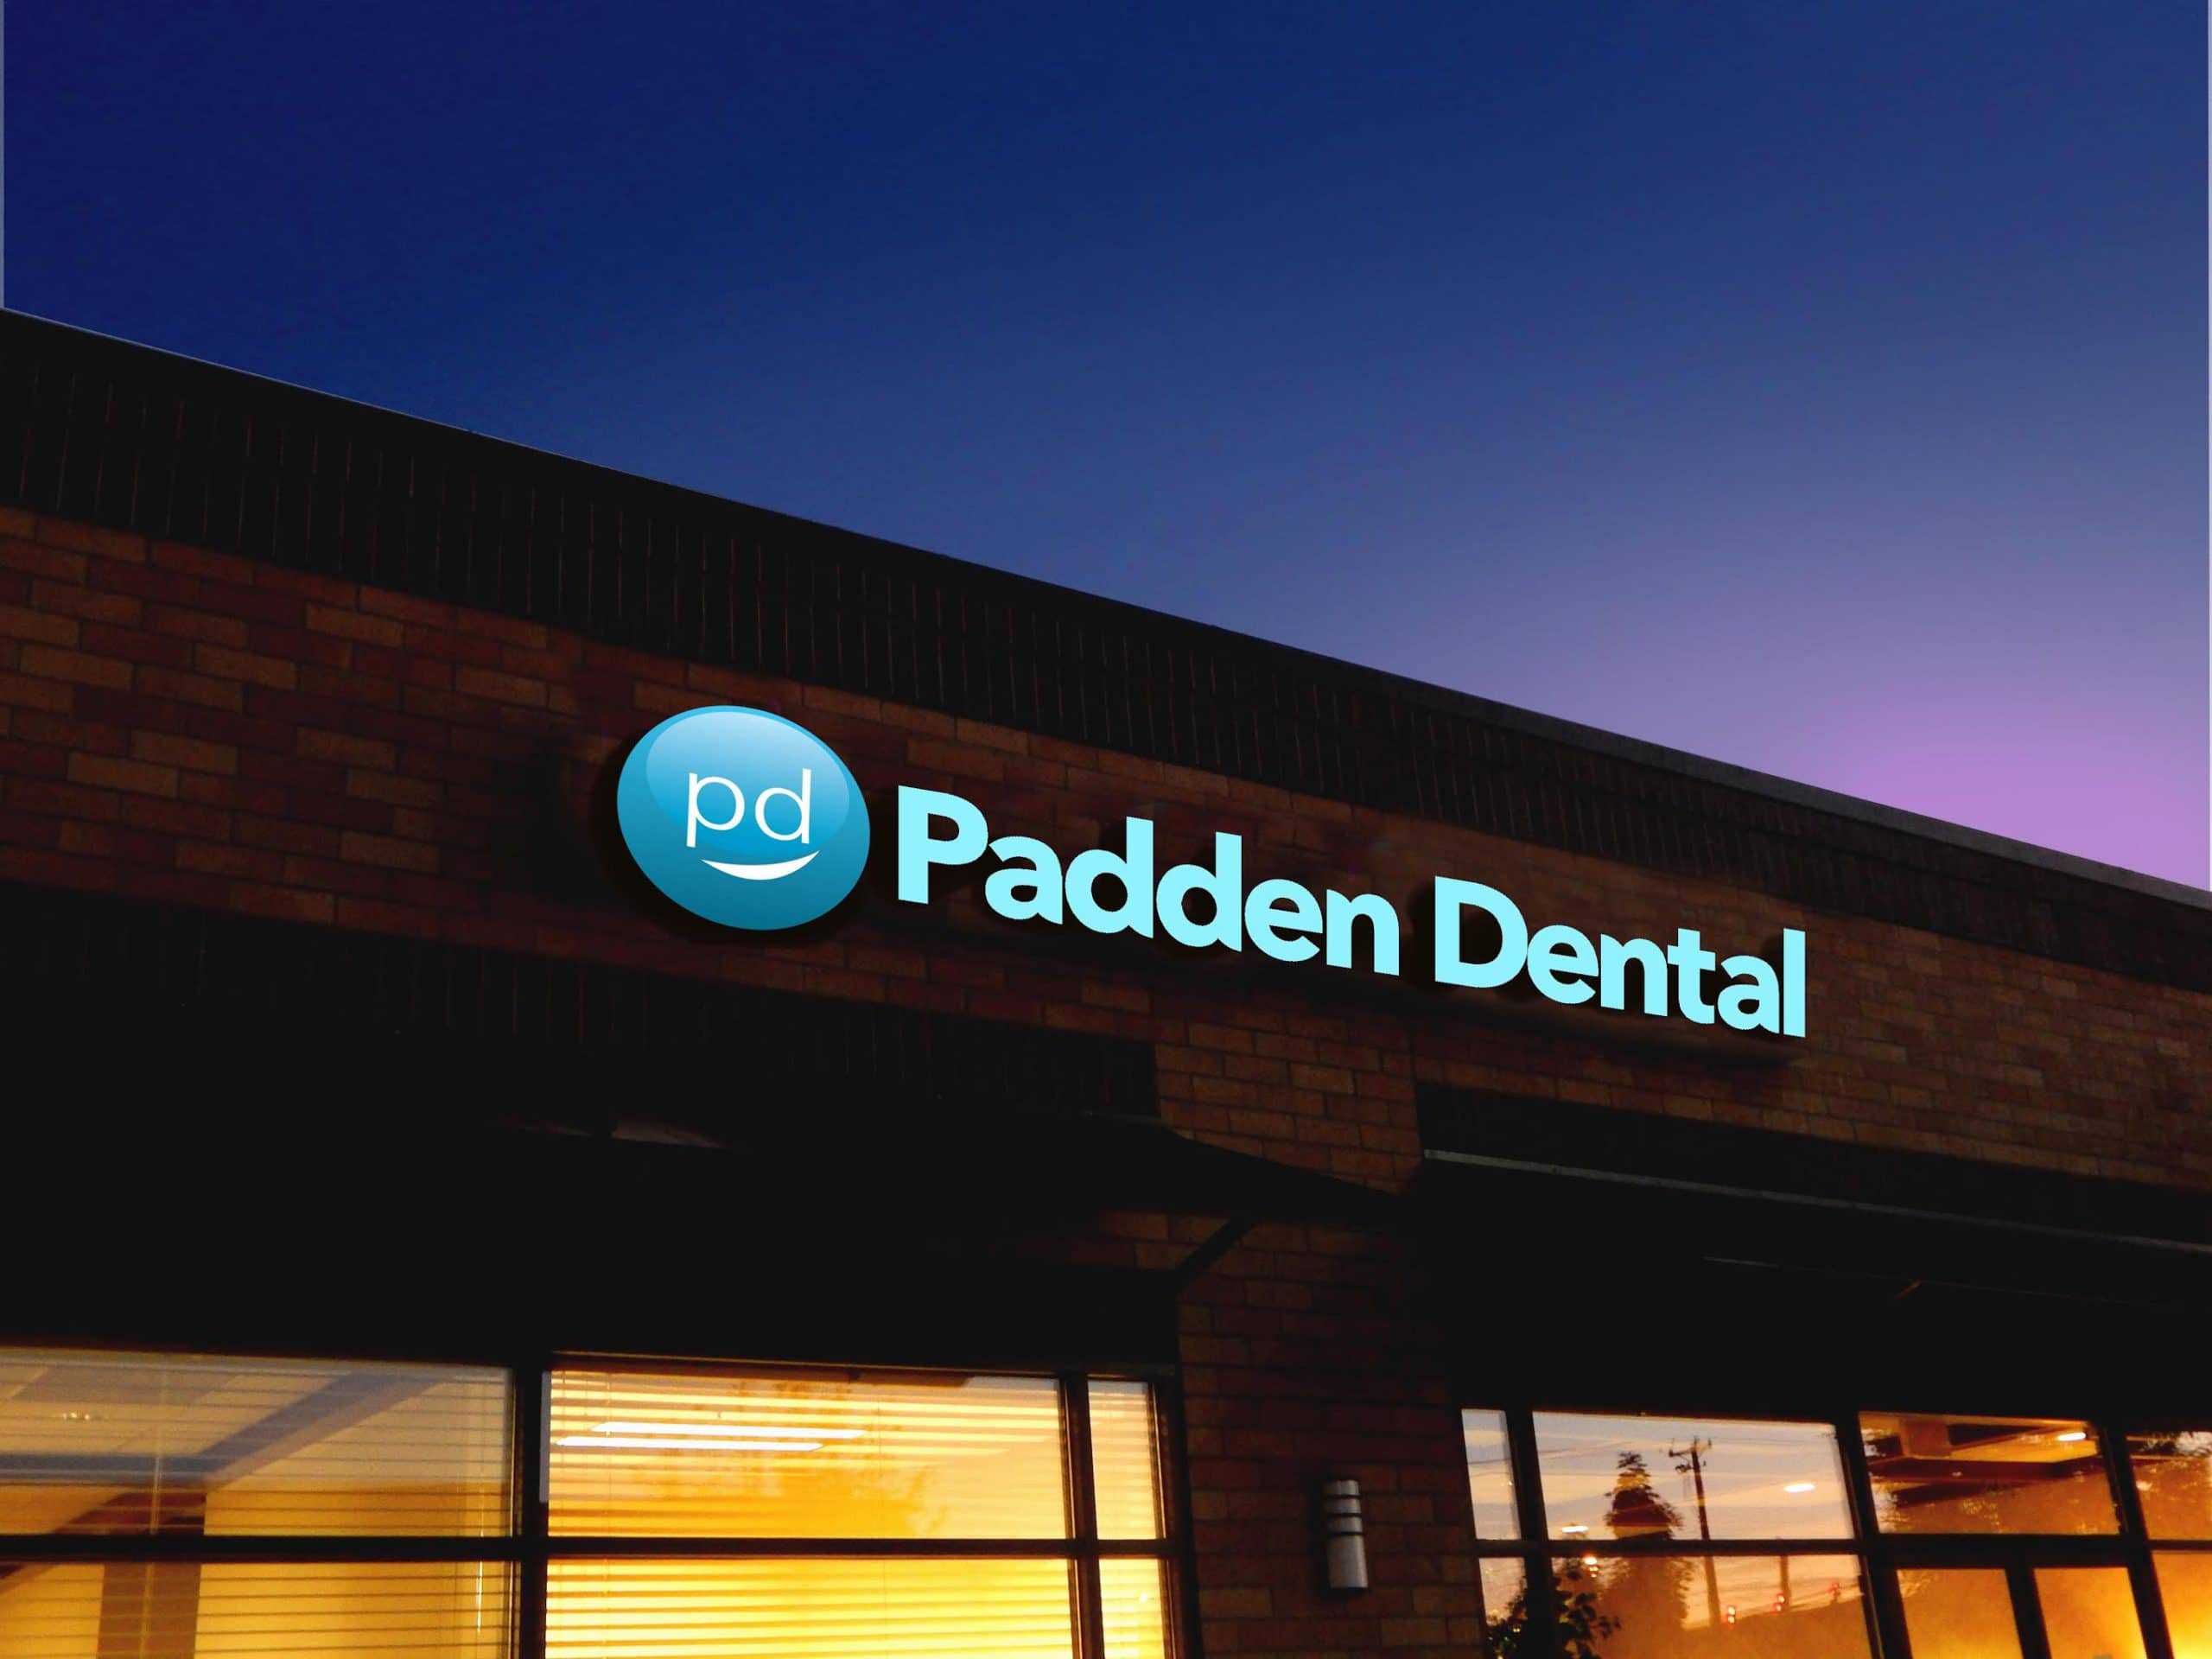 Padden Dental Building